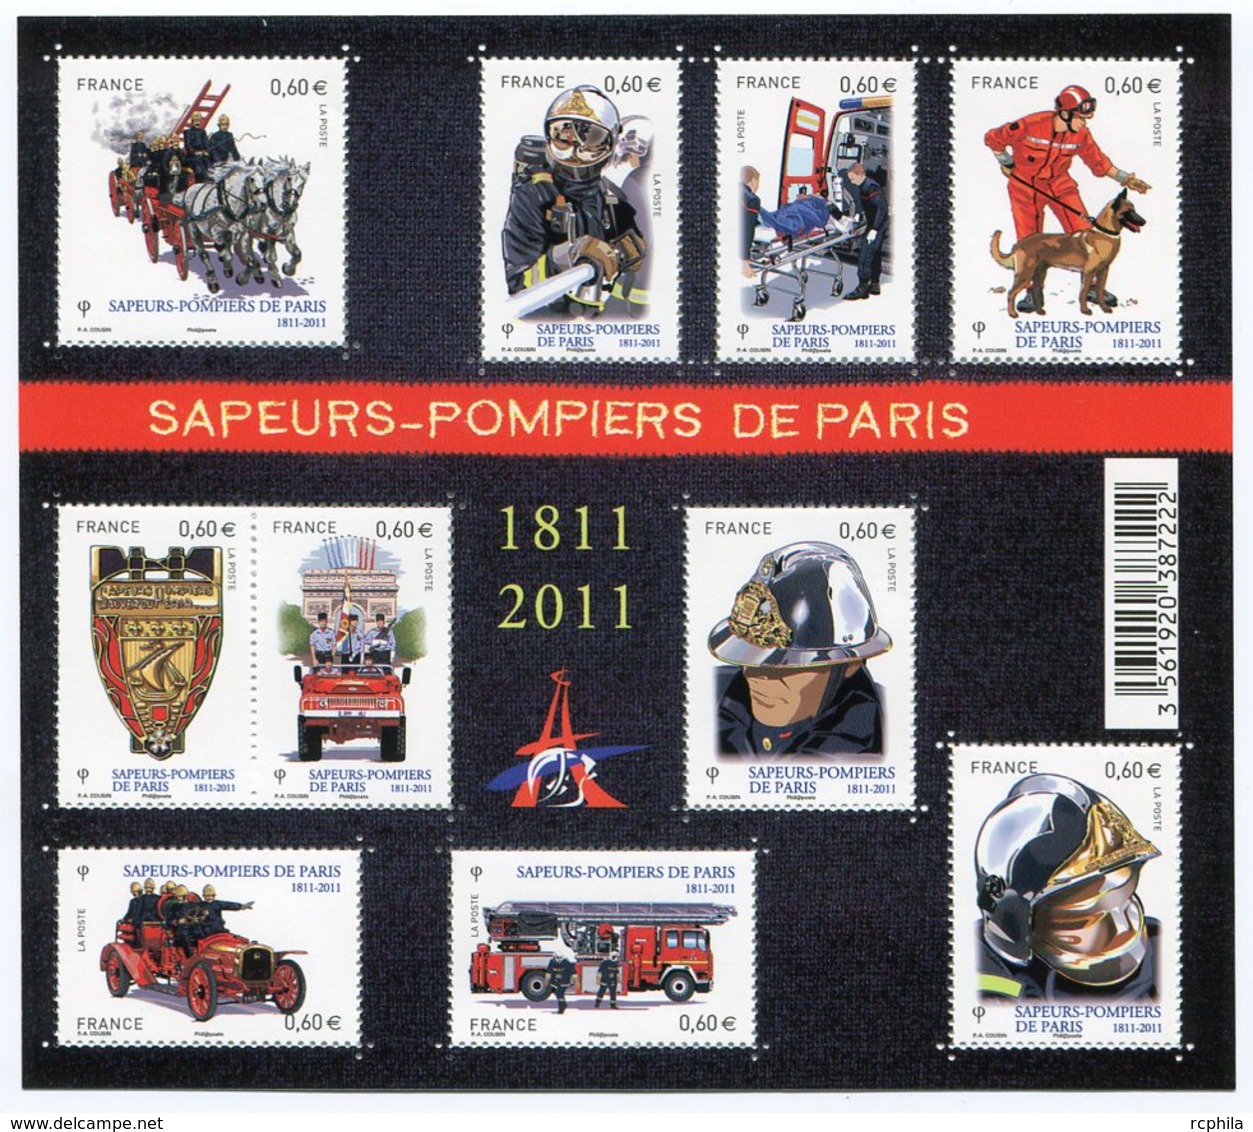 RC 12092 FRANCE BF N° F4582 SAPEURS POMPIERS DE PARIS BLOC FEUILLET NEUF ** A LA FACIALE - Ungebraucht